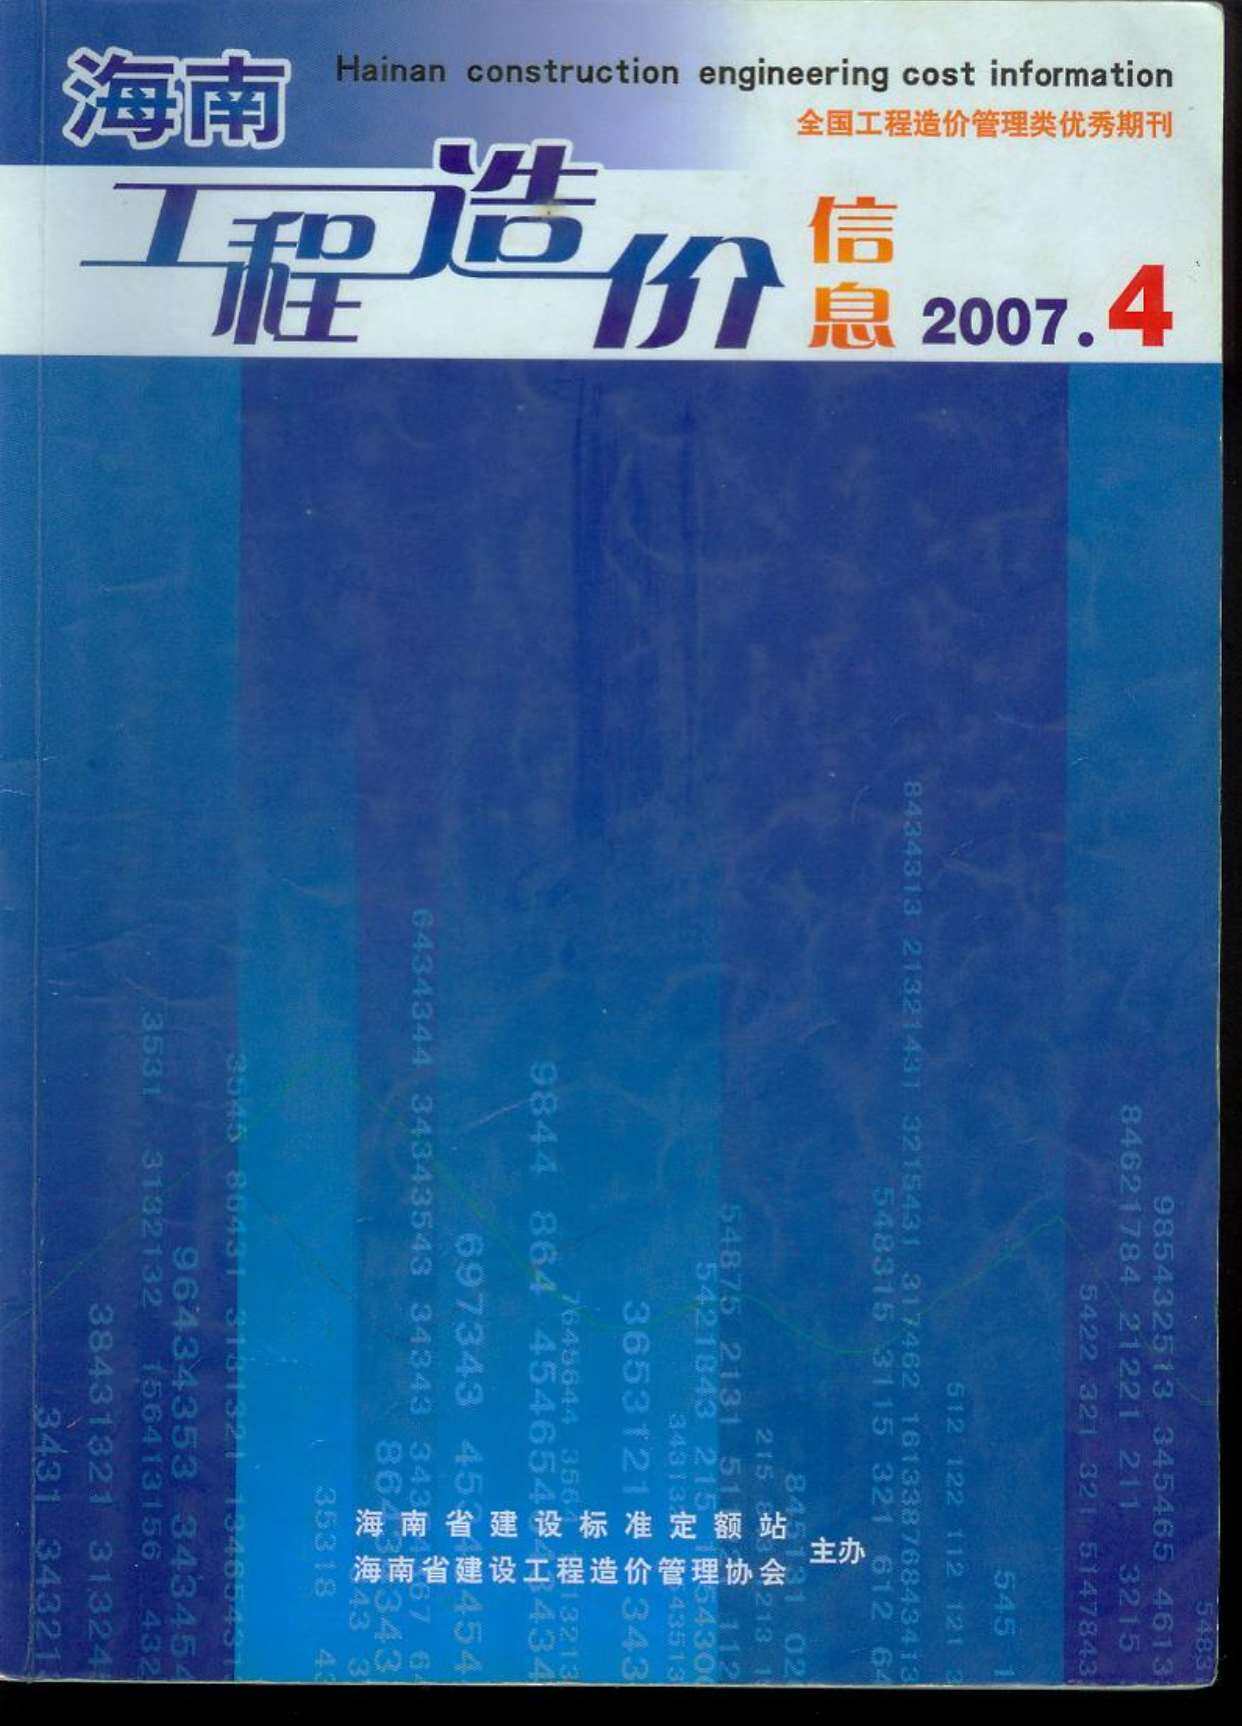 海南省2007年第4期工程造价信息pdf电子版